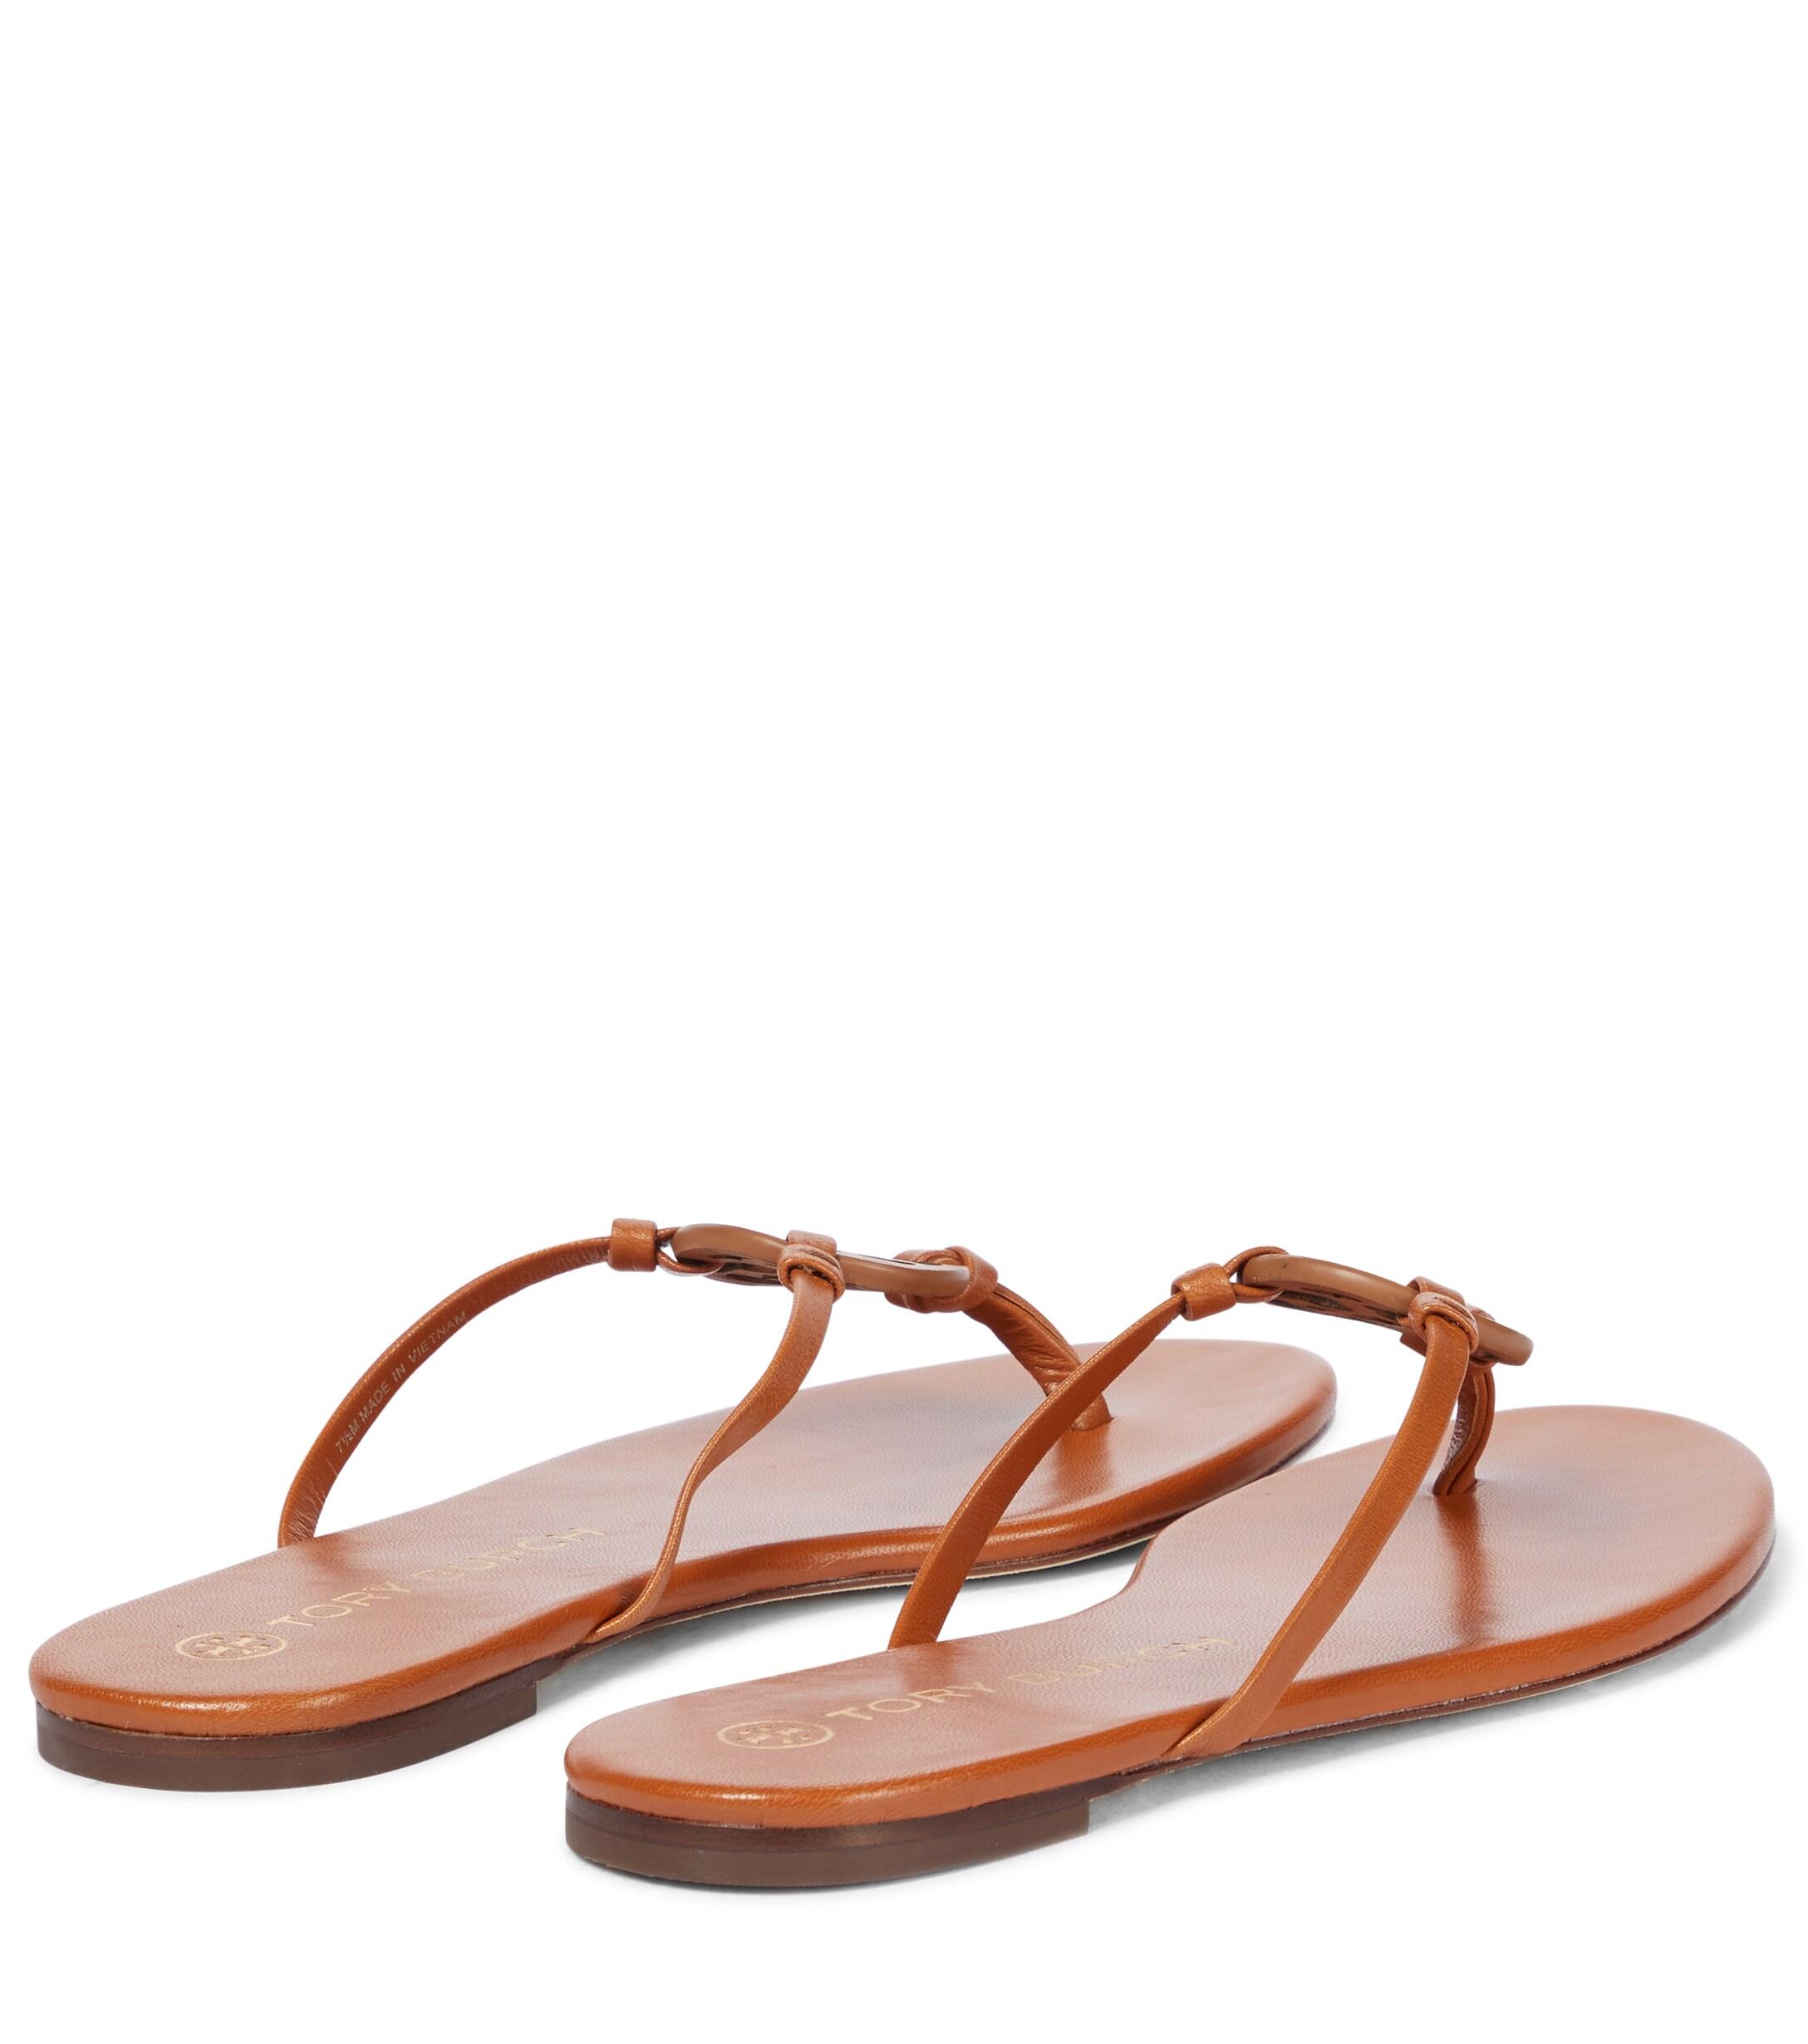 Tory Burch Miller Flat Thong Sandals - Brown